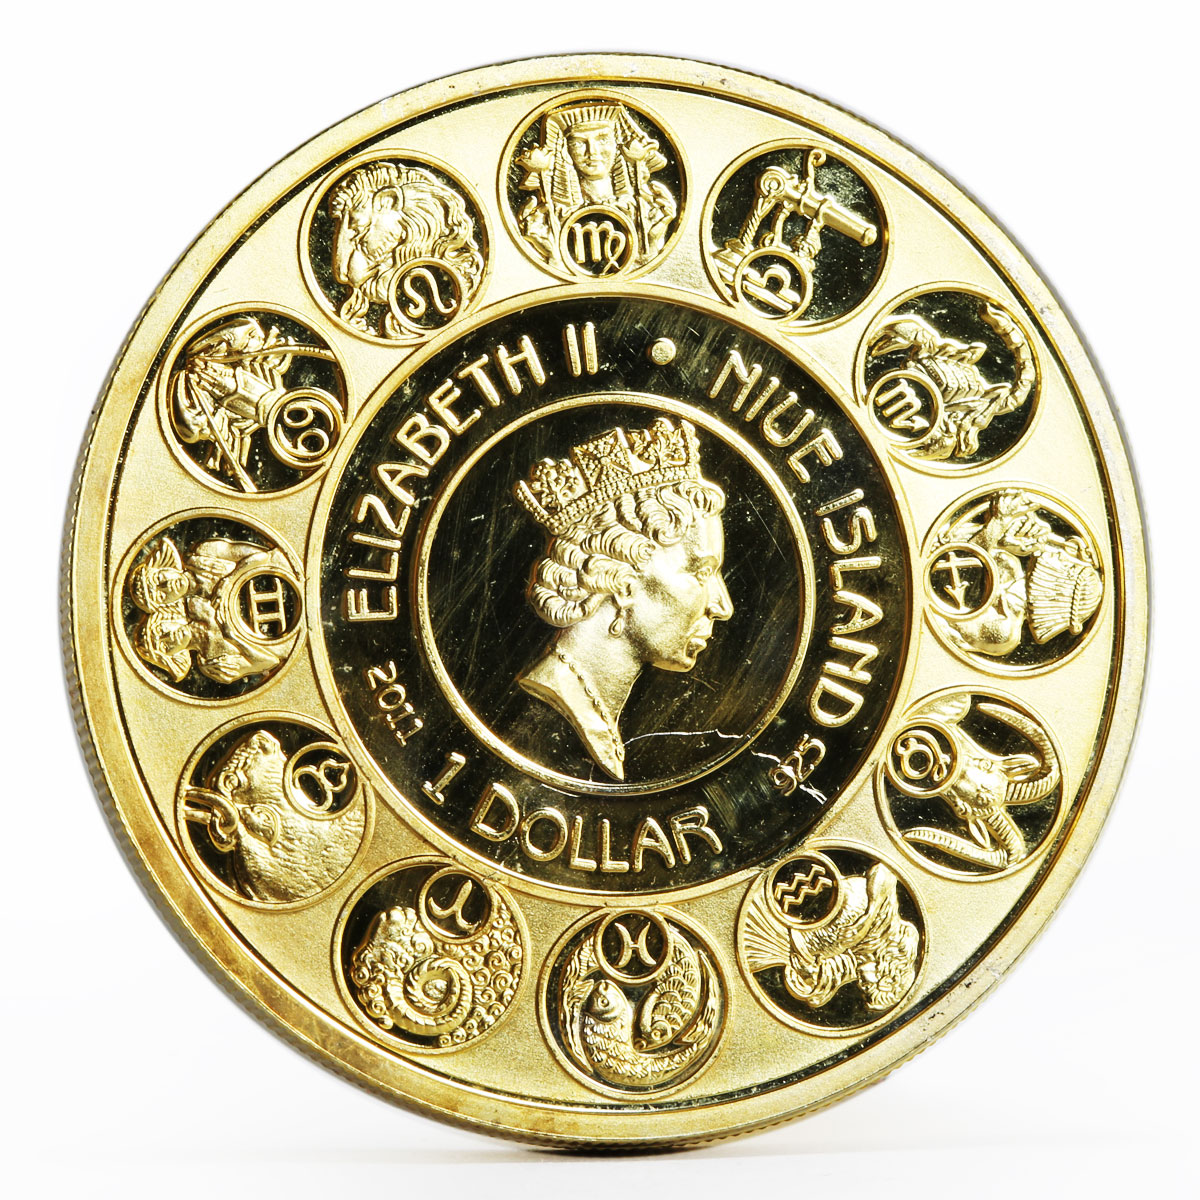 Niue 1 dollar A. Mucha Zodiac Series Taurus gilded silver coin 2011